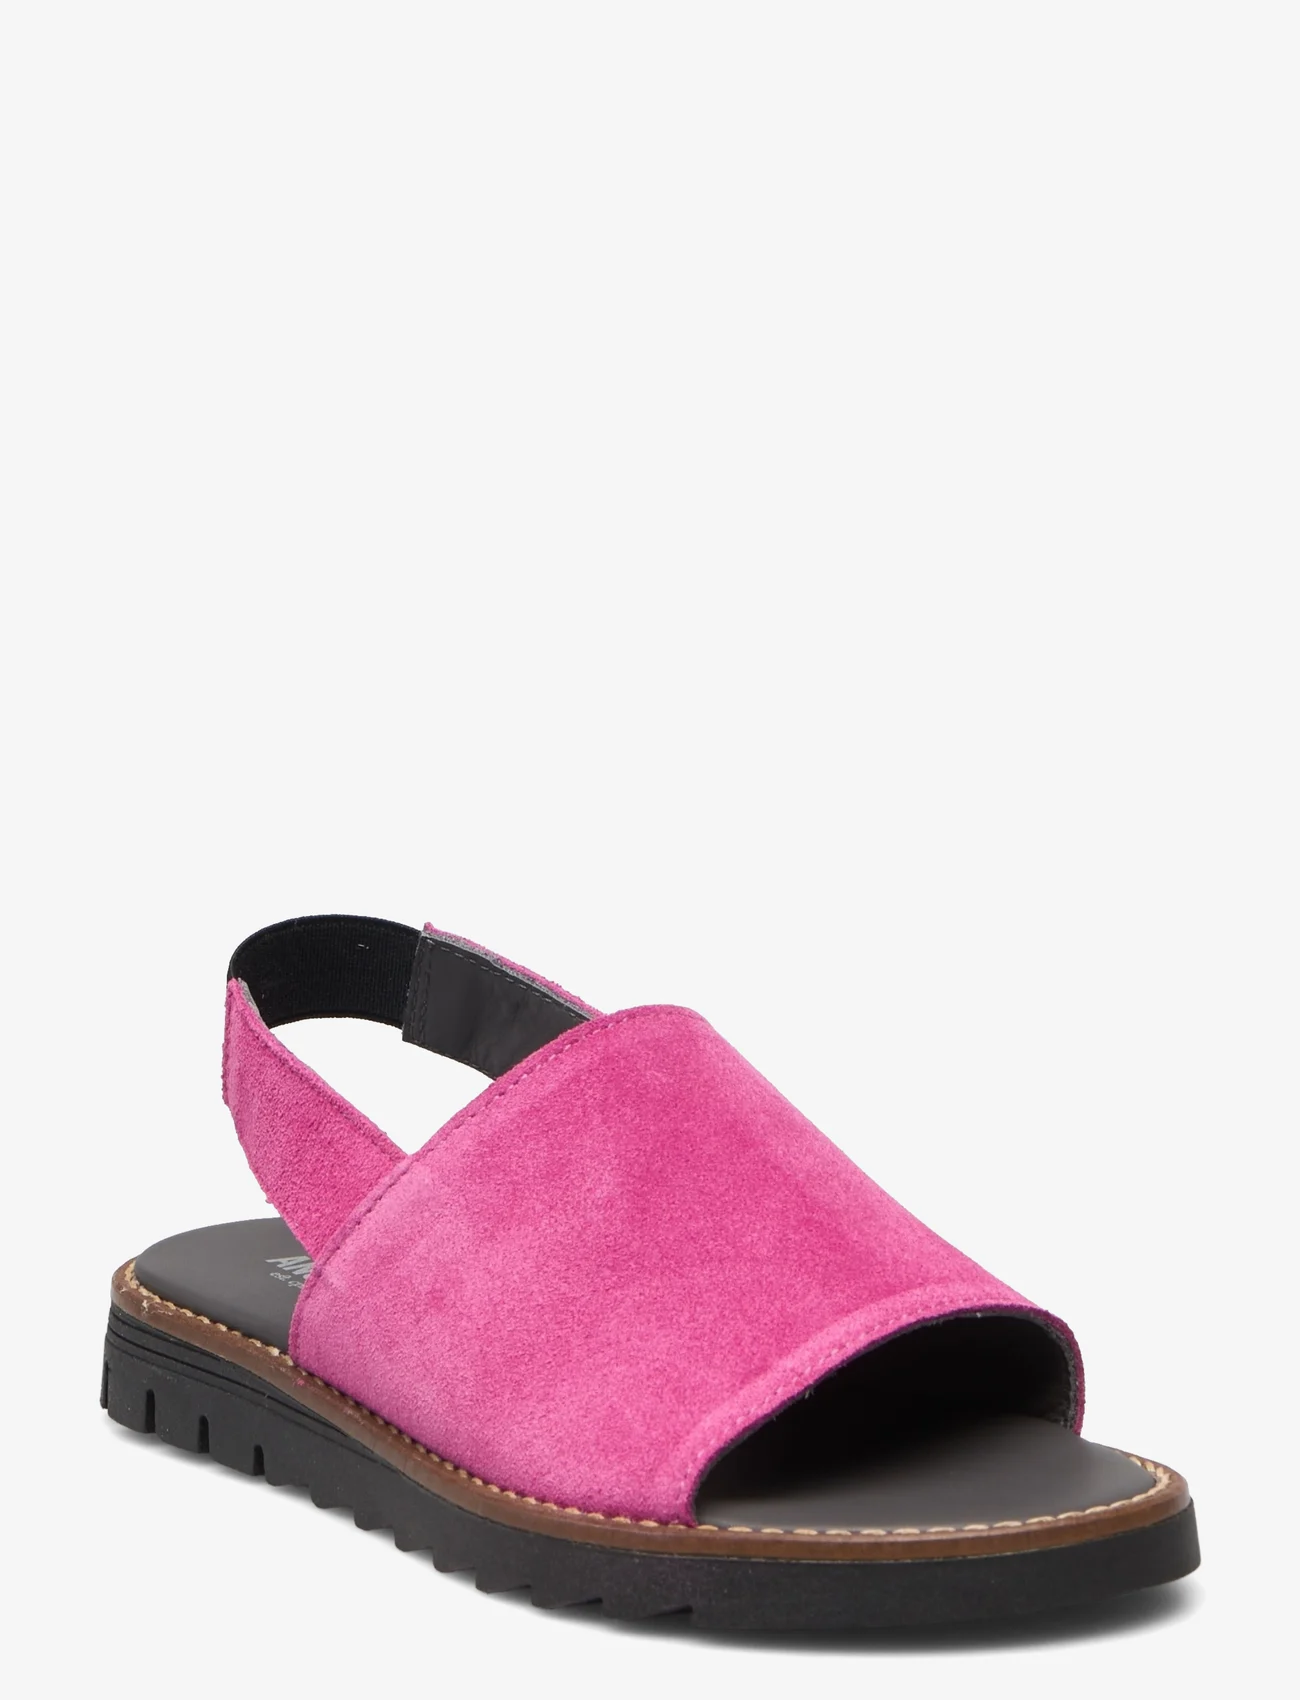 ANGULUS - Sandals - flat - open toe - op - summer savings - 1150 pink - 0